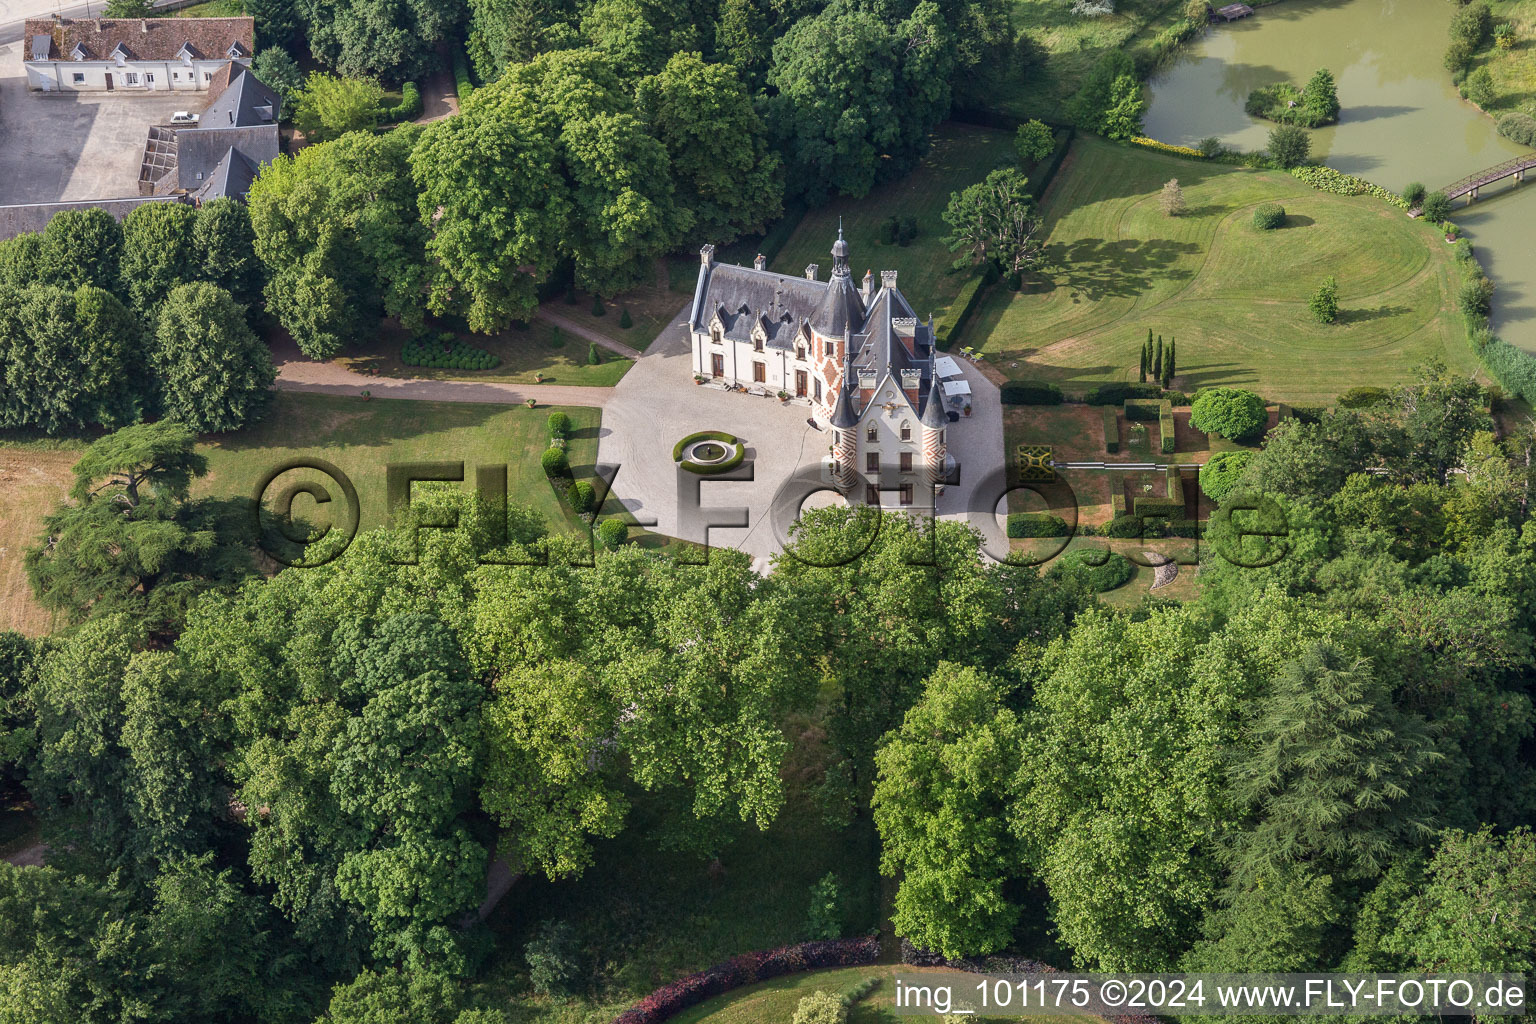 Luftbild von Gebäudeund Schloßpark vom Schloß in Saint-Cyr-du-Gault in Centre-Val de Loire im Bundesland Loir-et-Cher, Frankreich